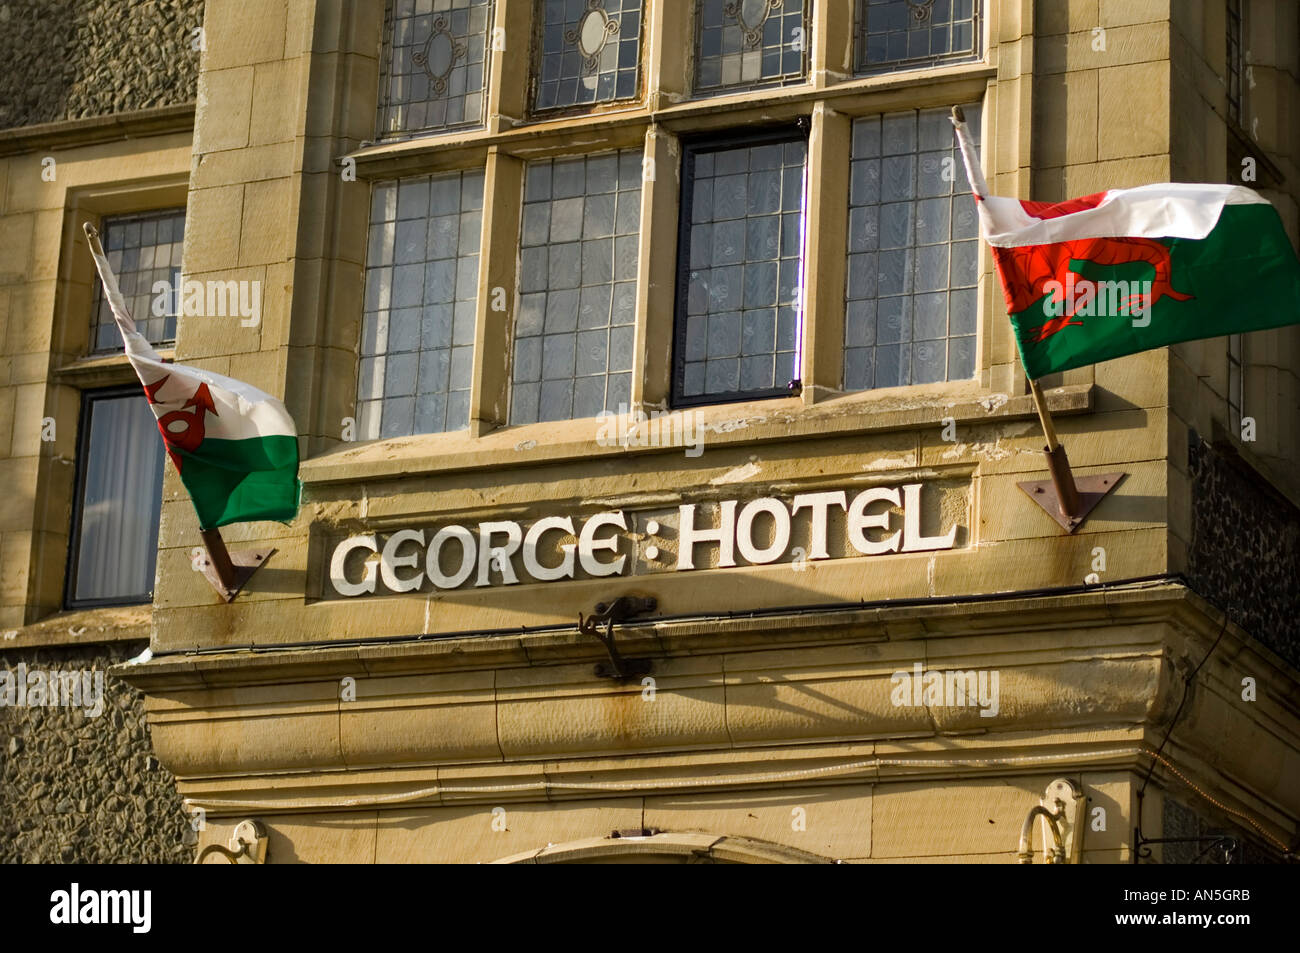 george hotel criccieth gwynedd north wales with red dragon welsh flag banner flying Stock Photo